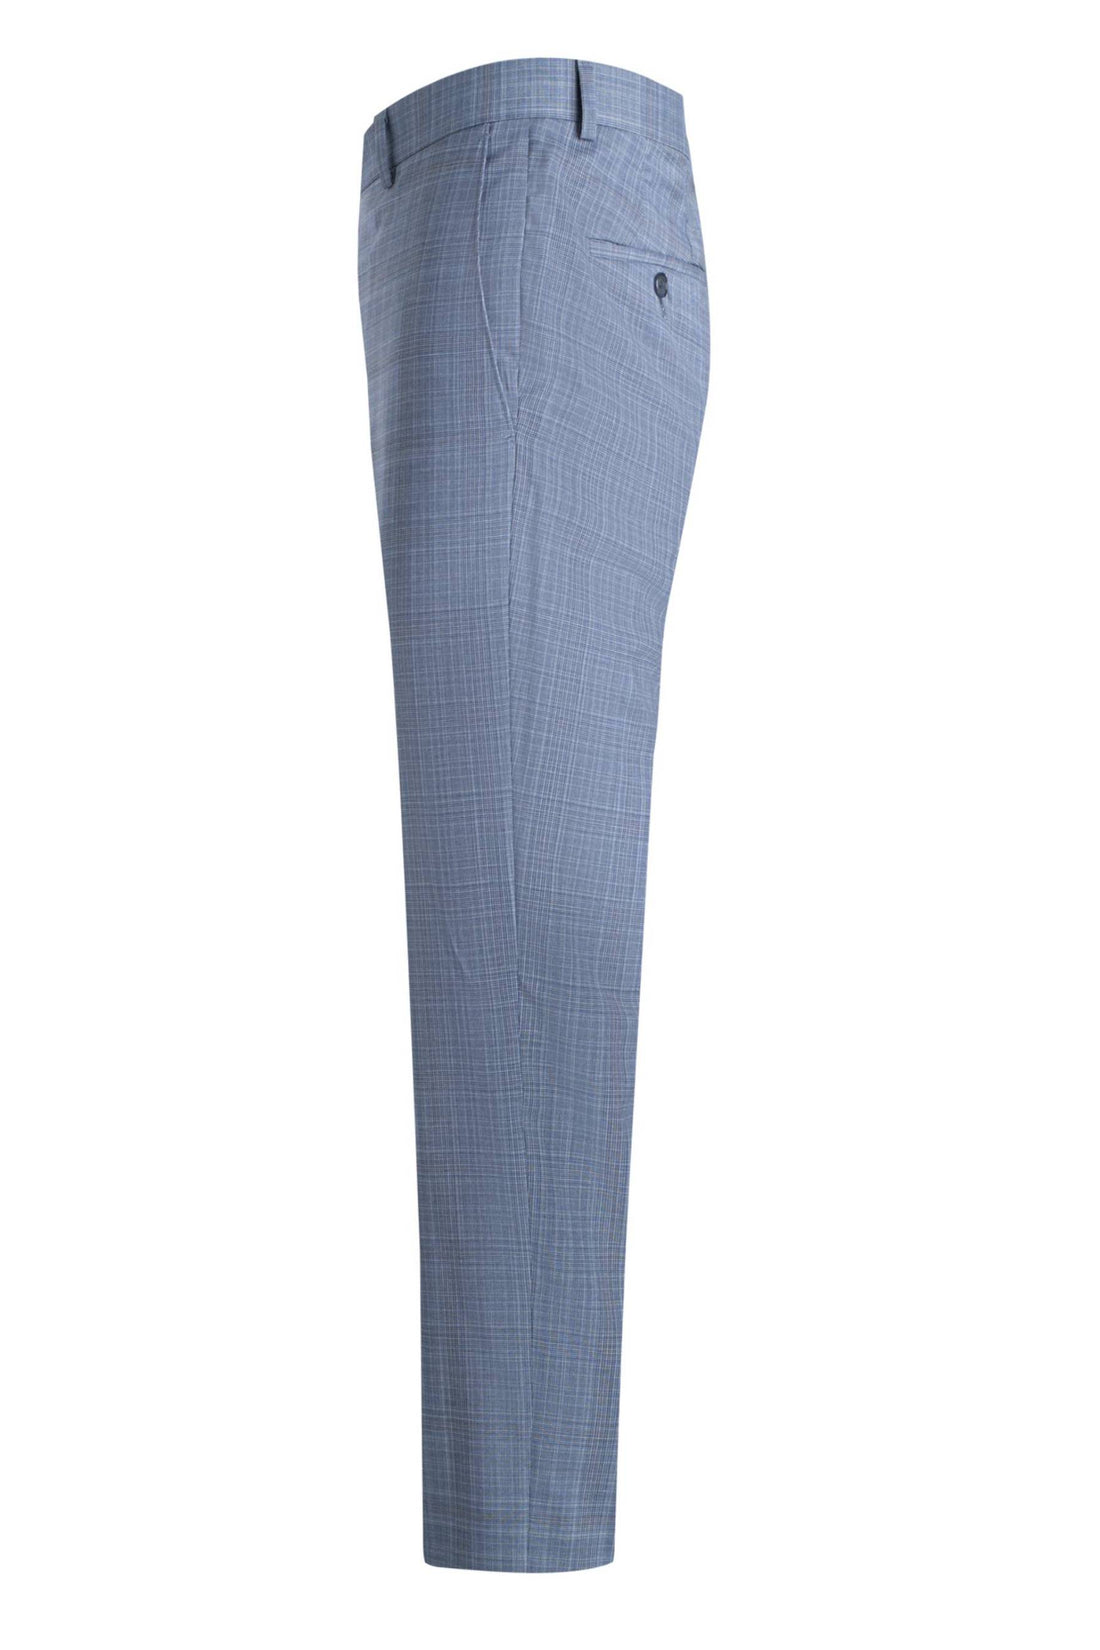 Samuelsohn Light Blue Plaid Soft Suit Front Side Pant